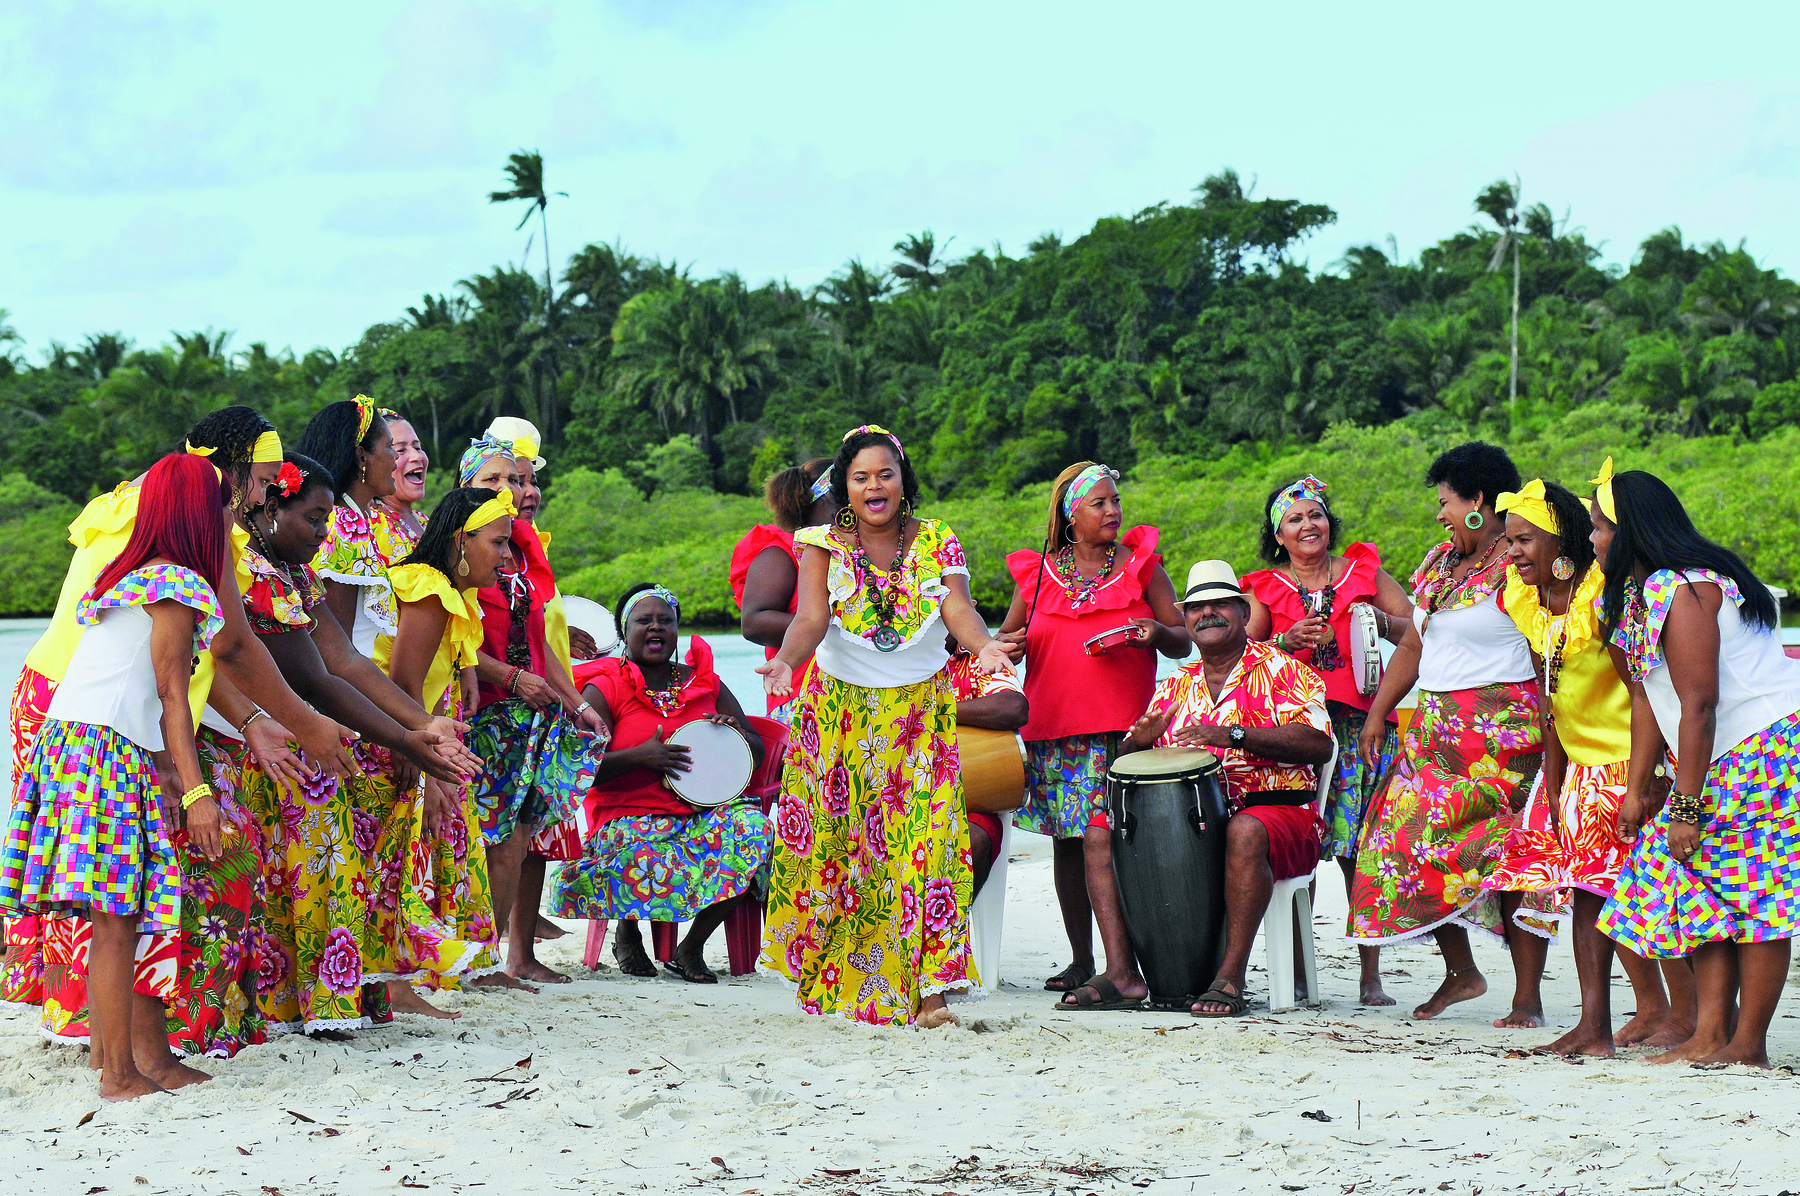 Fotografia. Mulheres na praia, em uma roda de samba. Vestem saias longas e coloridas. Usam faixas e adornos nos cabelos. Algumas estão sentadas tocando instrumentos ao lado de um homem de chapéu. Ao redor, outras mulheres dançam.